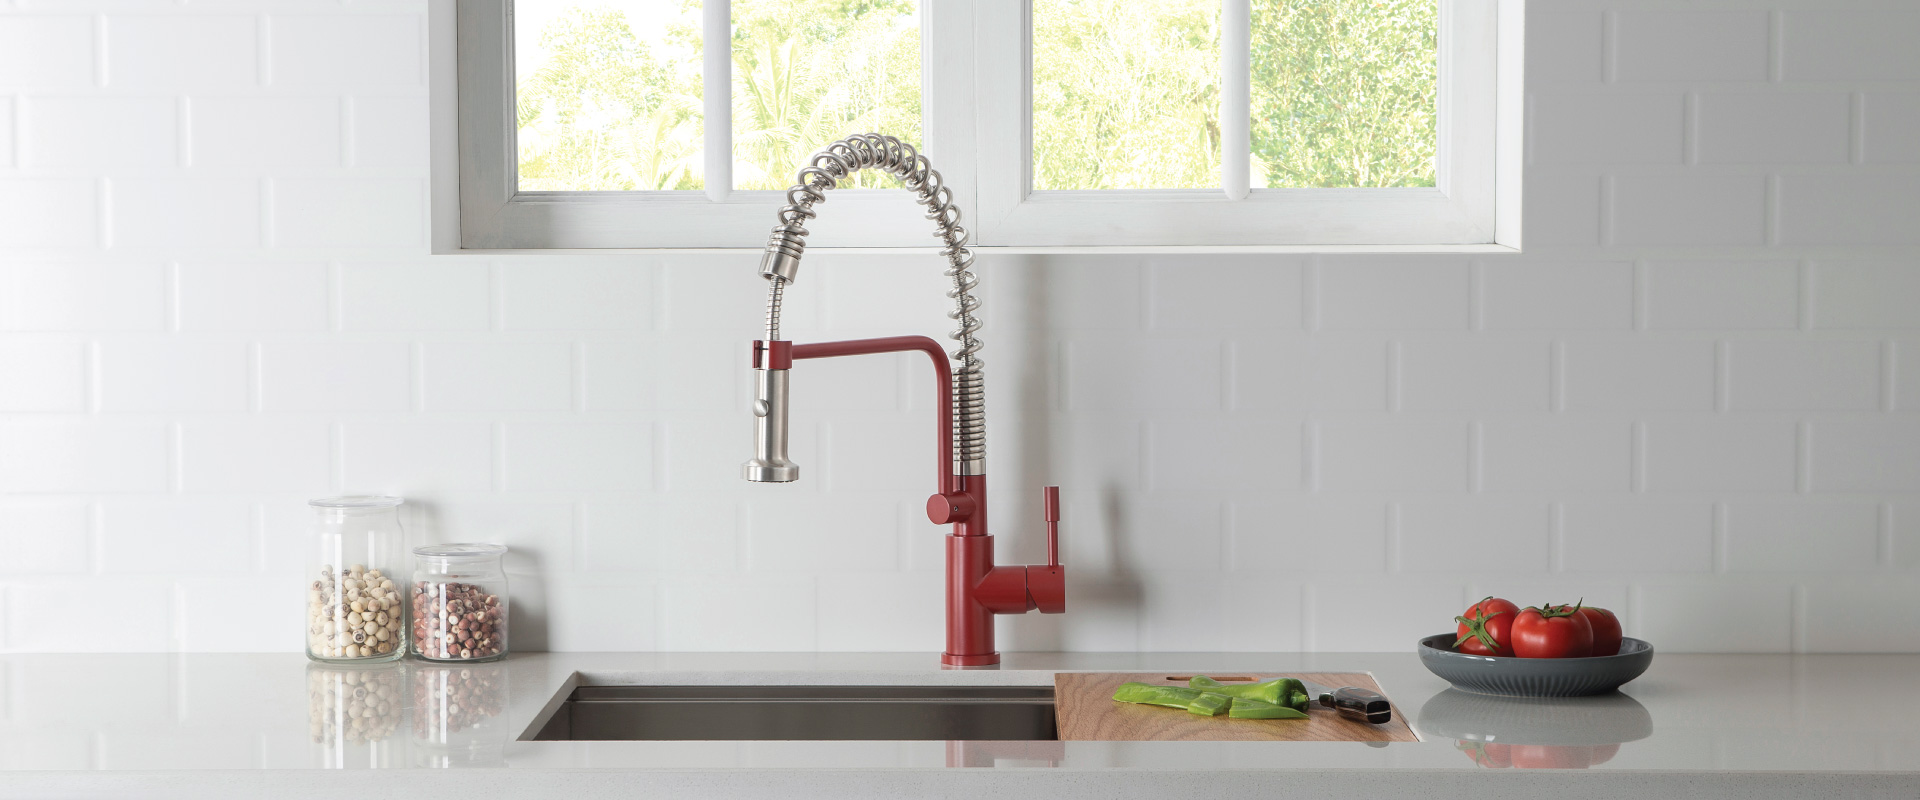 crimson red kitchen faucet